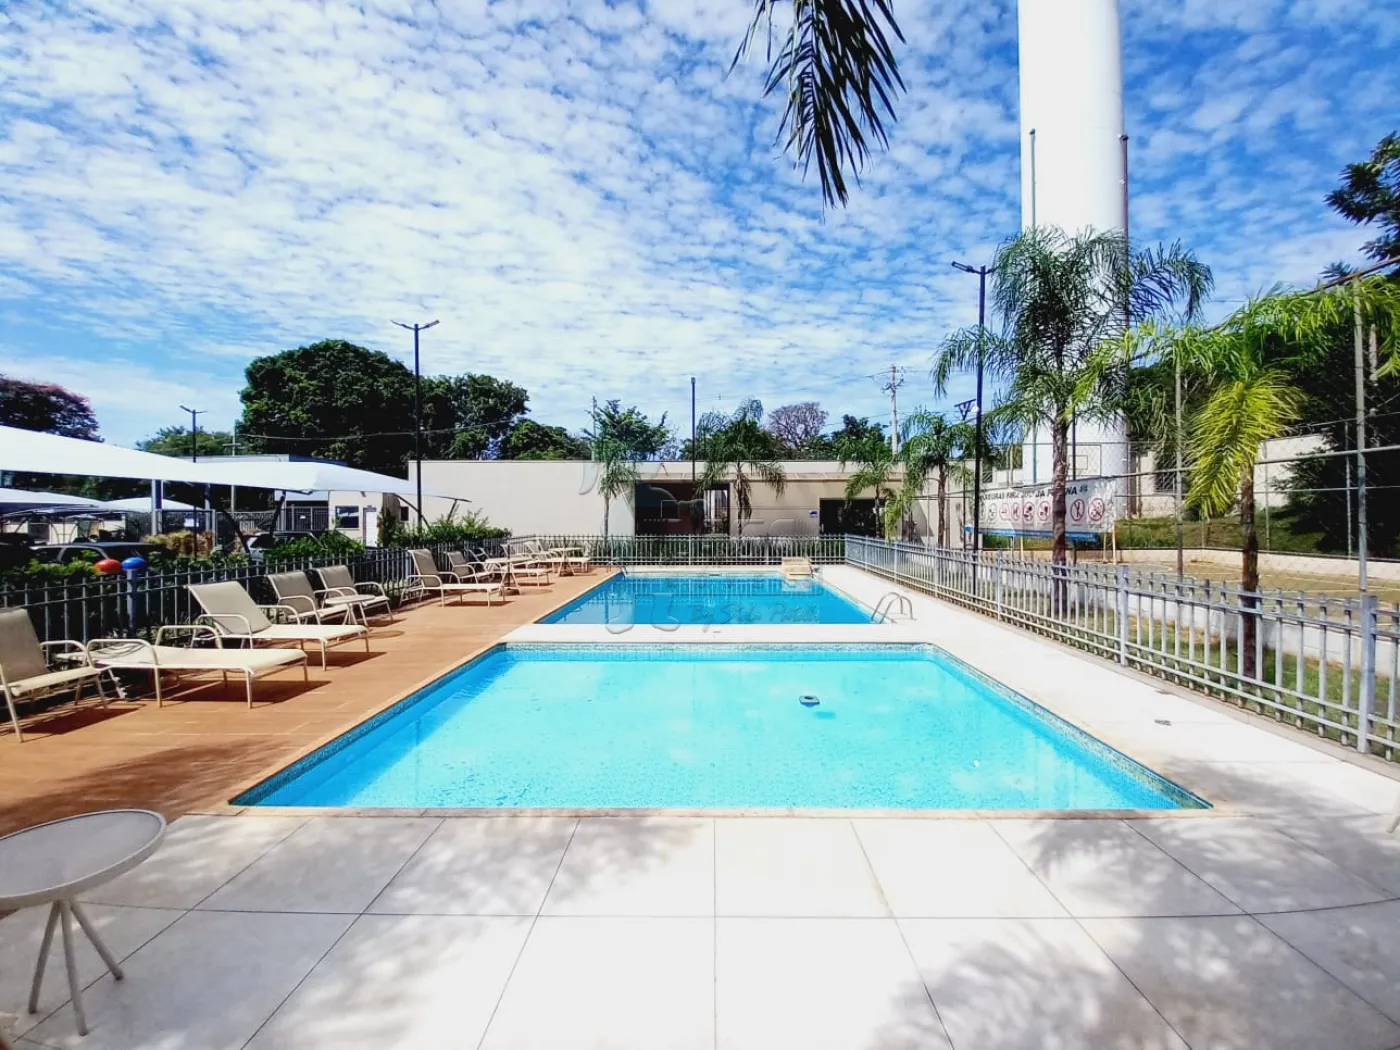 Alugar Apartamentos / Padrão em Ribeirão Preto R$ 700,00 - Foto 13